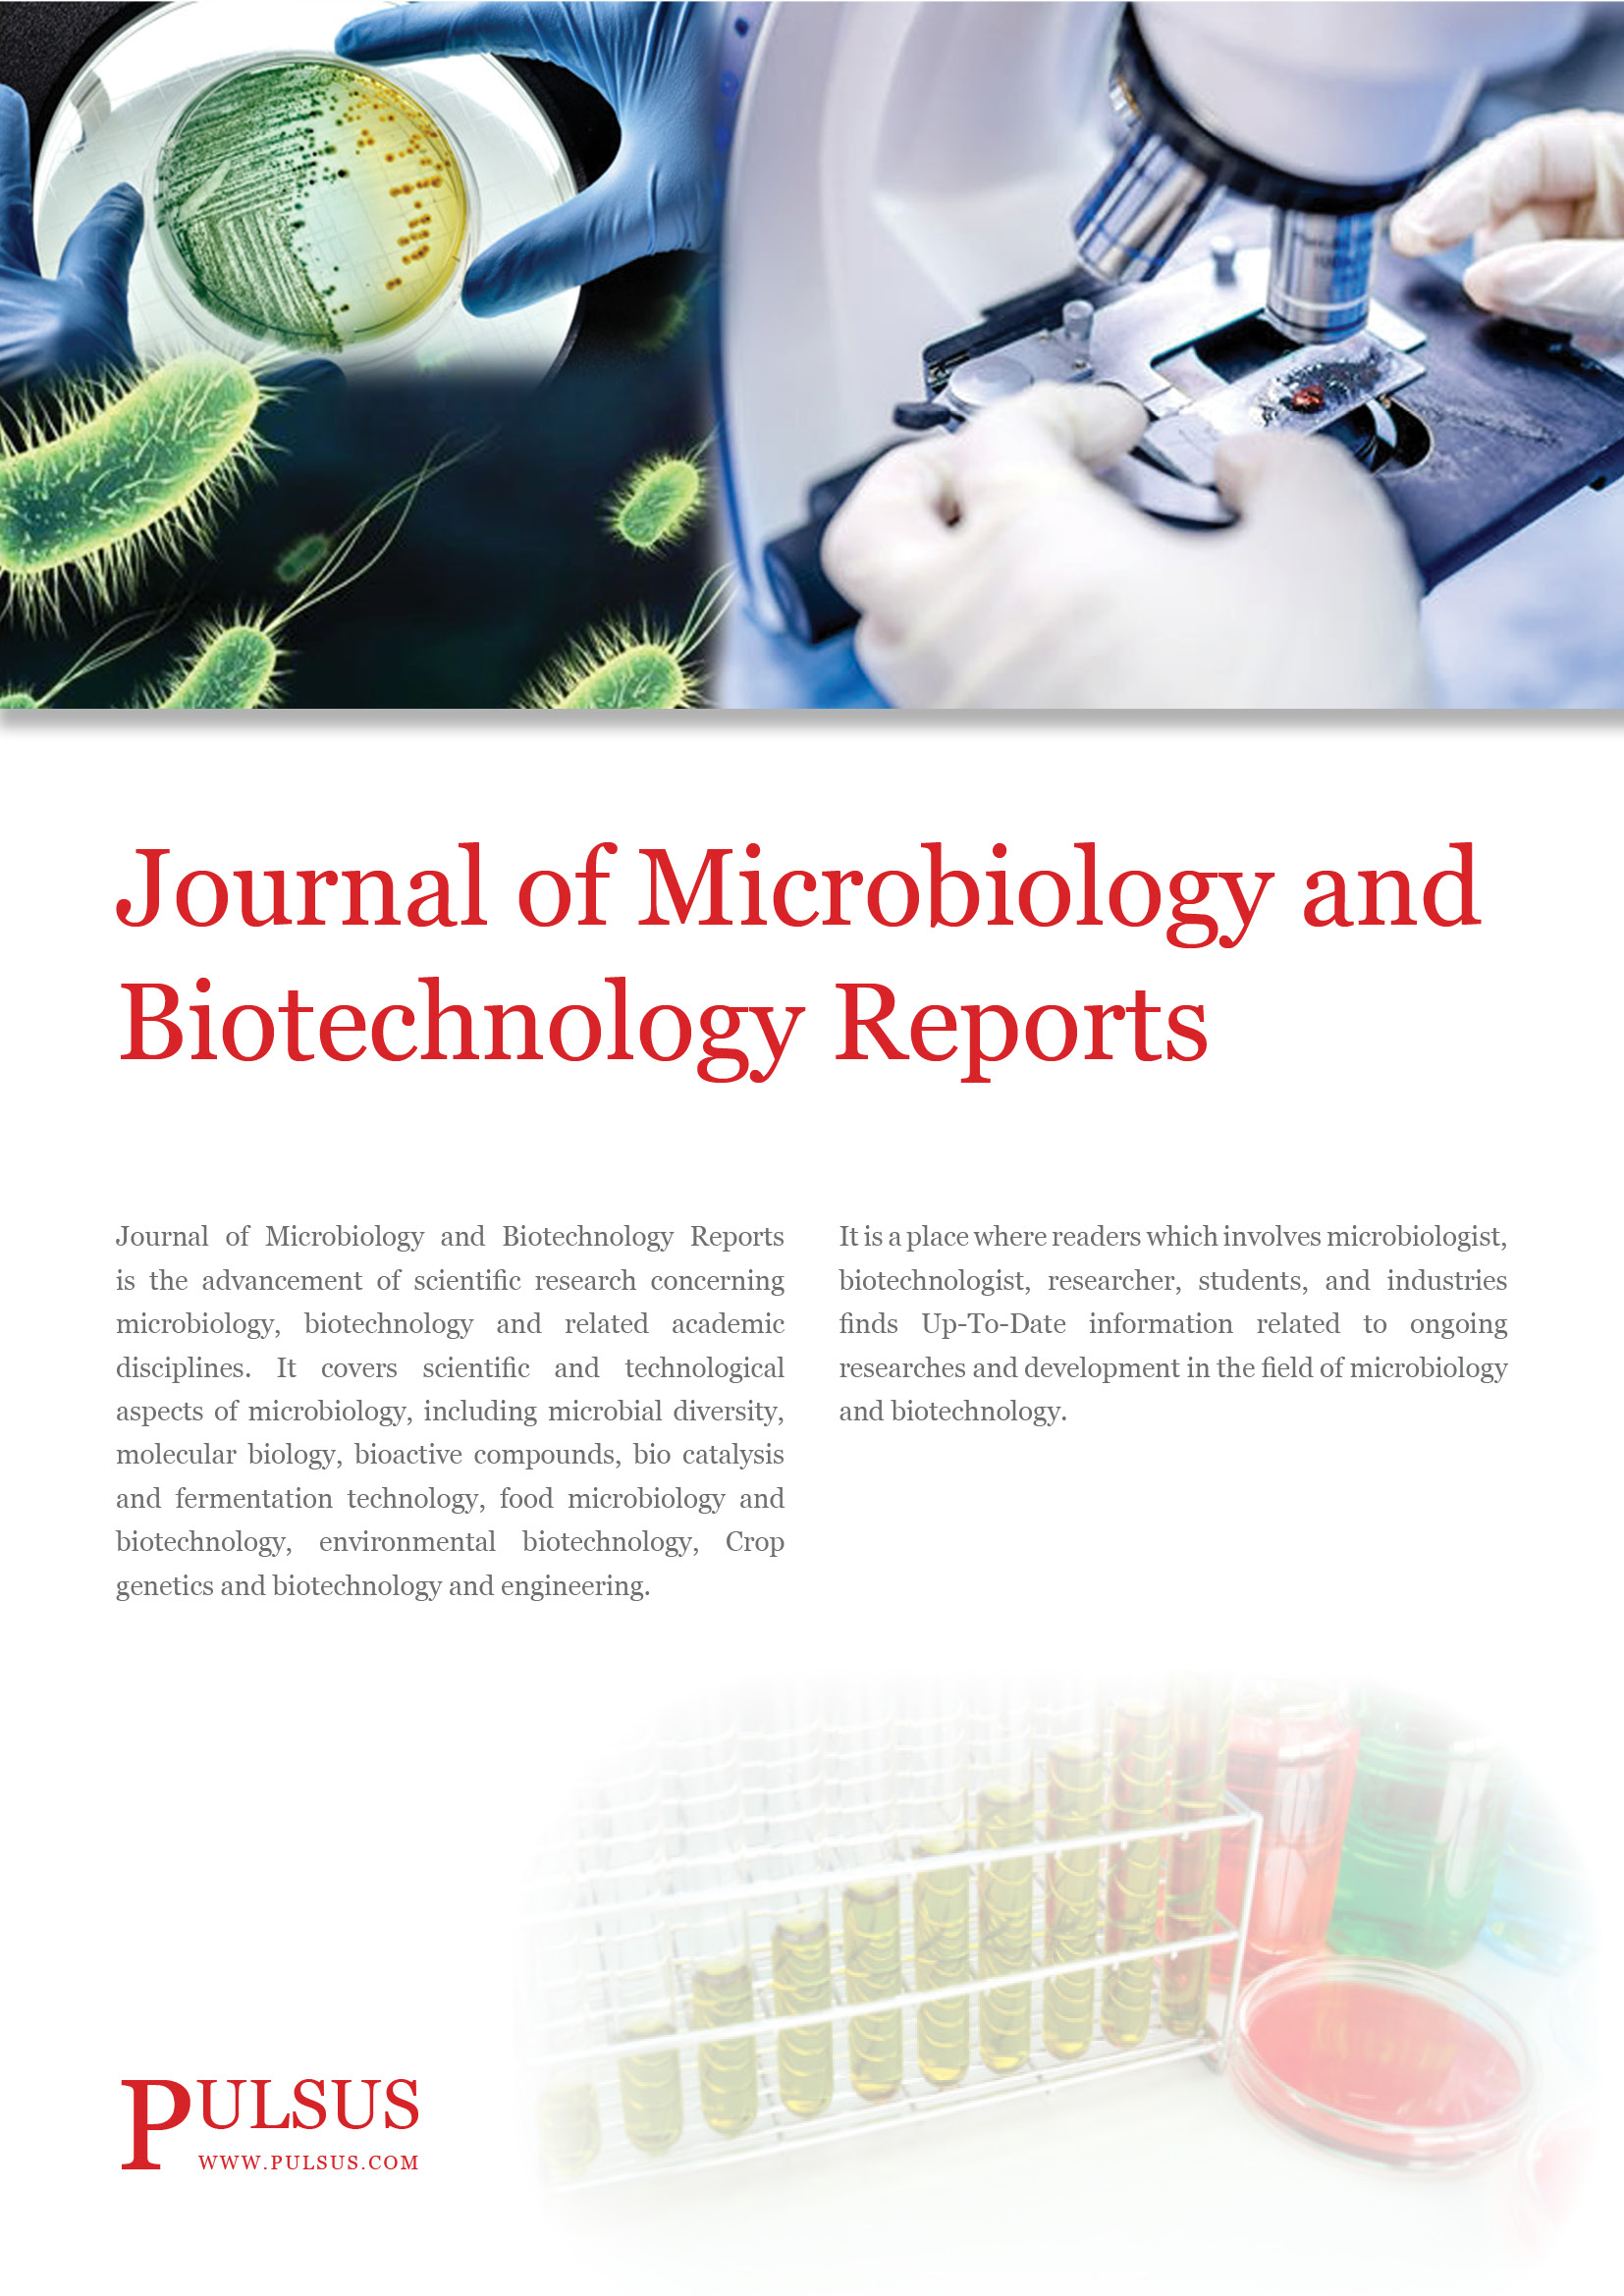 Relatórios do Jornal de Microbiologia e Biotecnologia